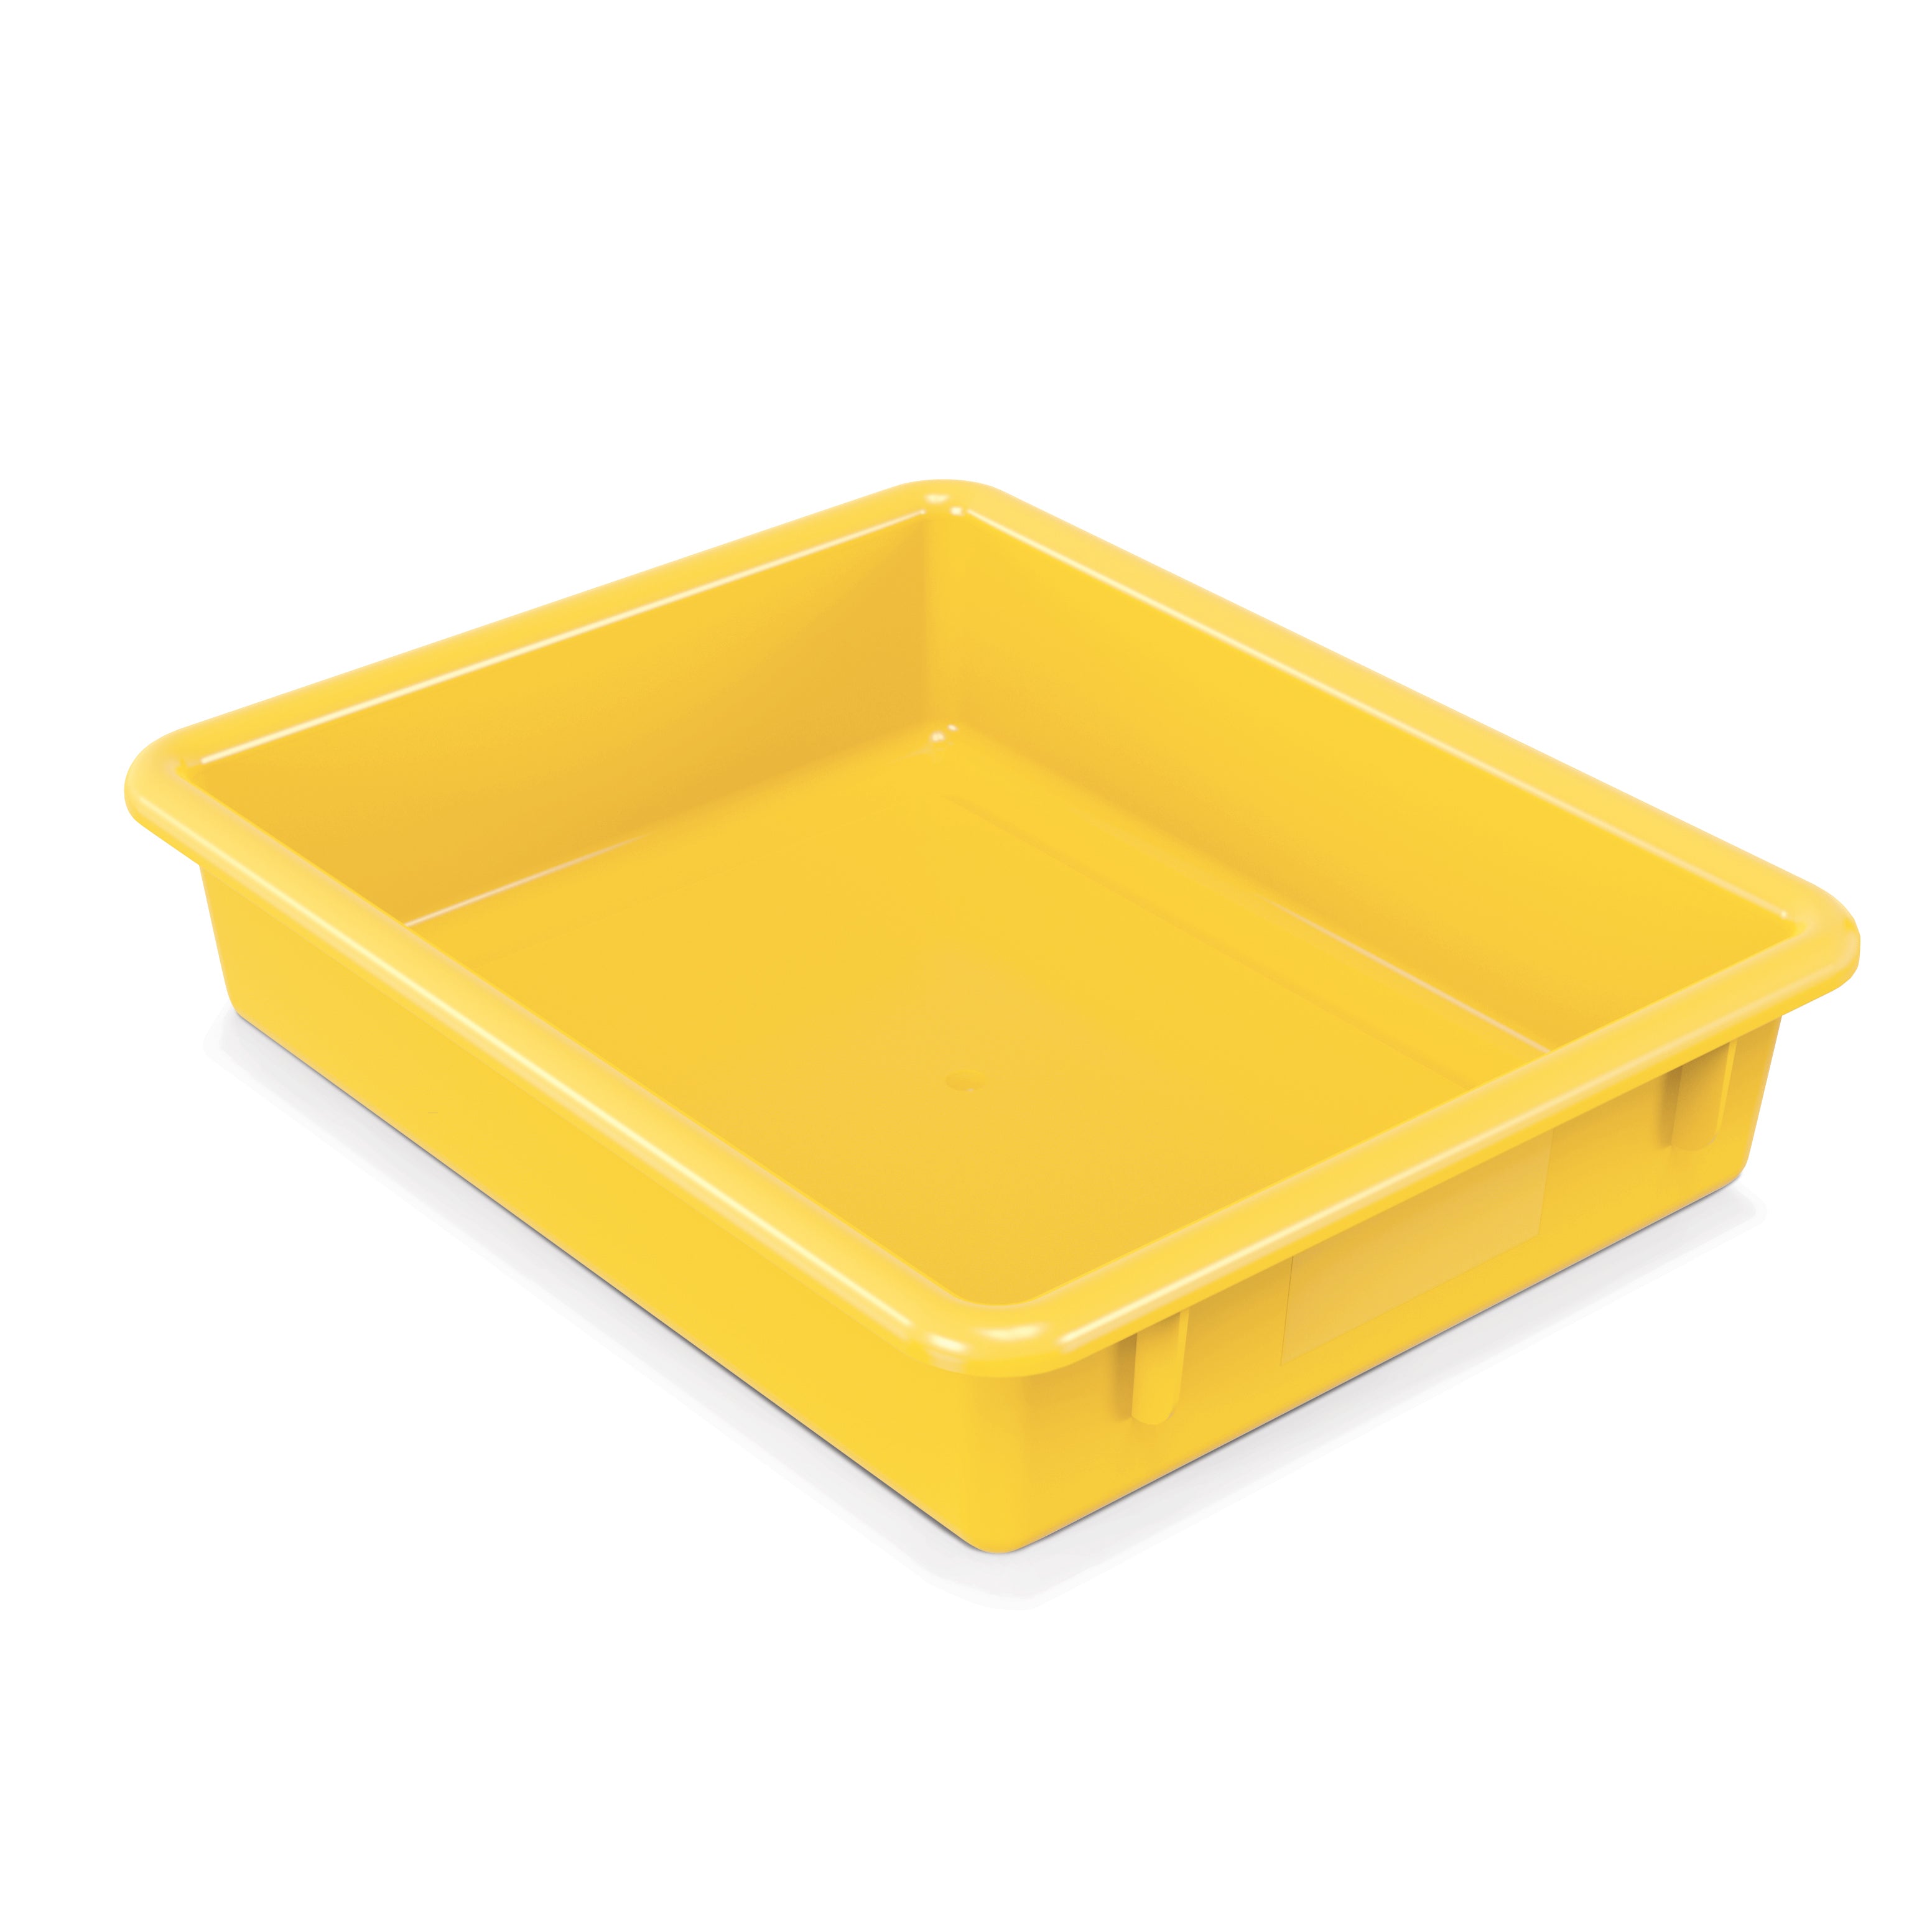 8034JC, Jonti-Craft Paper-Tray - Yellow